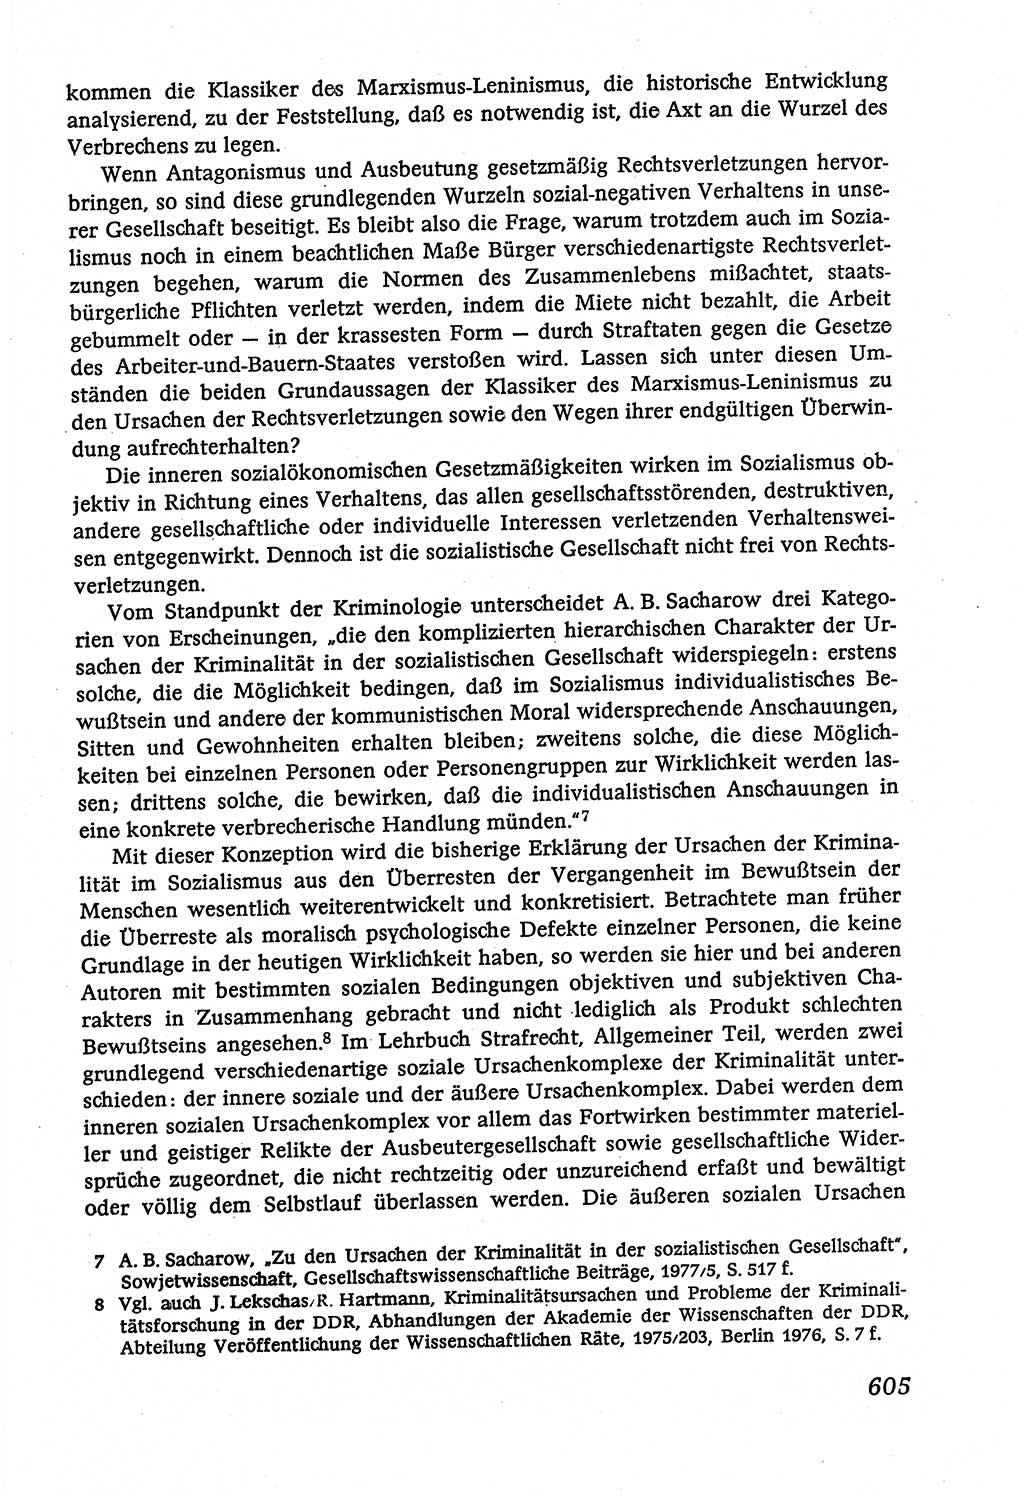 Marxistisch-leninistische (ML) Staats- und Rechtstheorie [Deutsche Demokratische Republik (DDR)], Lehrbuch 1980, Seite 605 (ML St.-R.-Th. DDR Lb. 1980, S. 605)